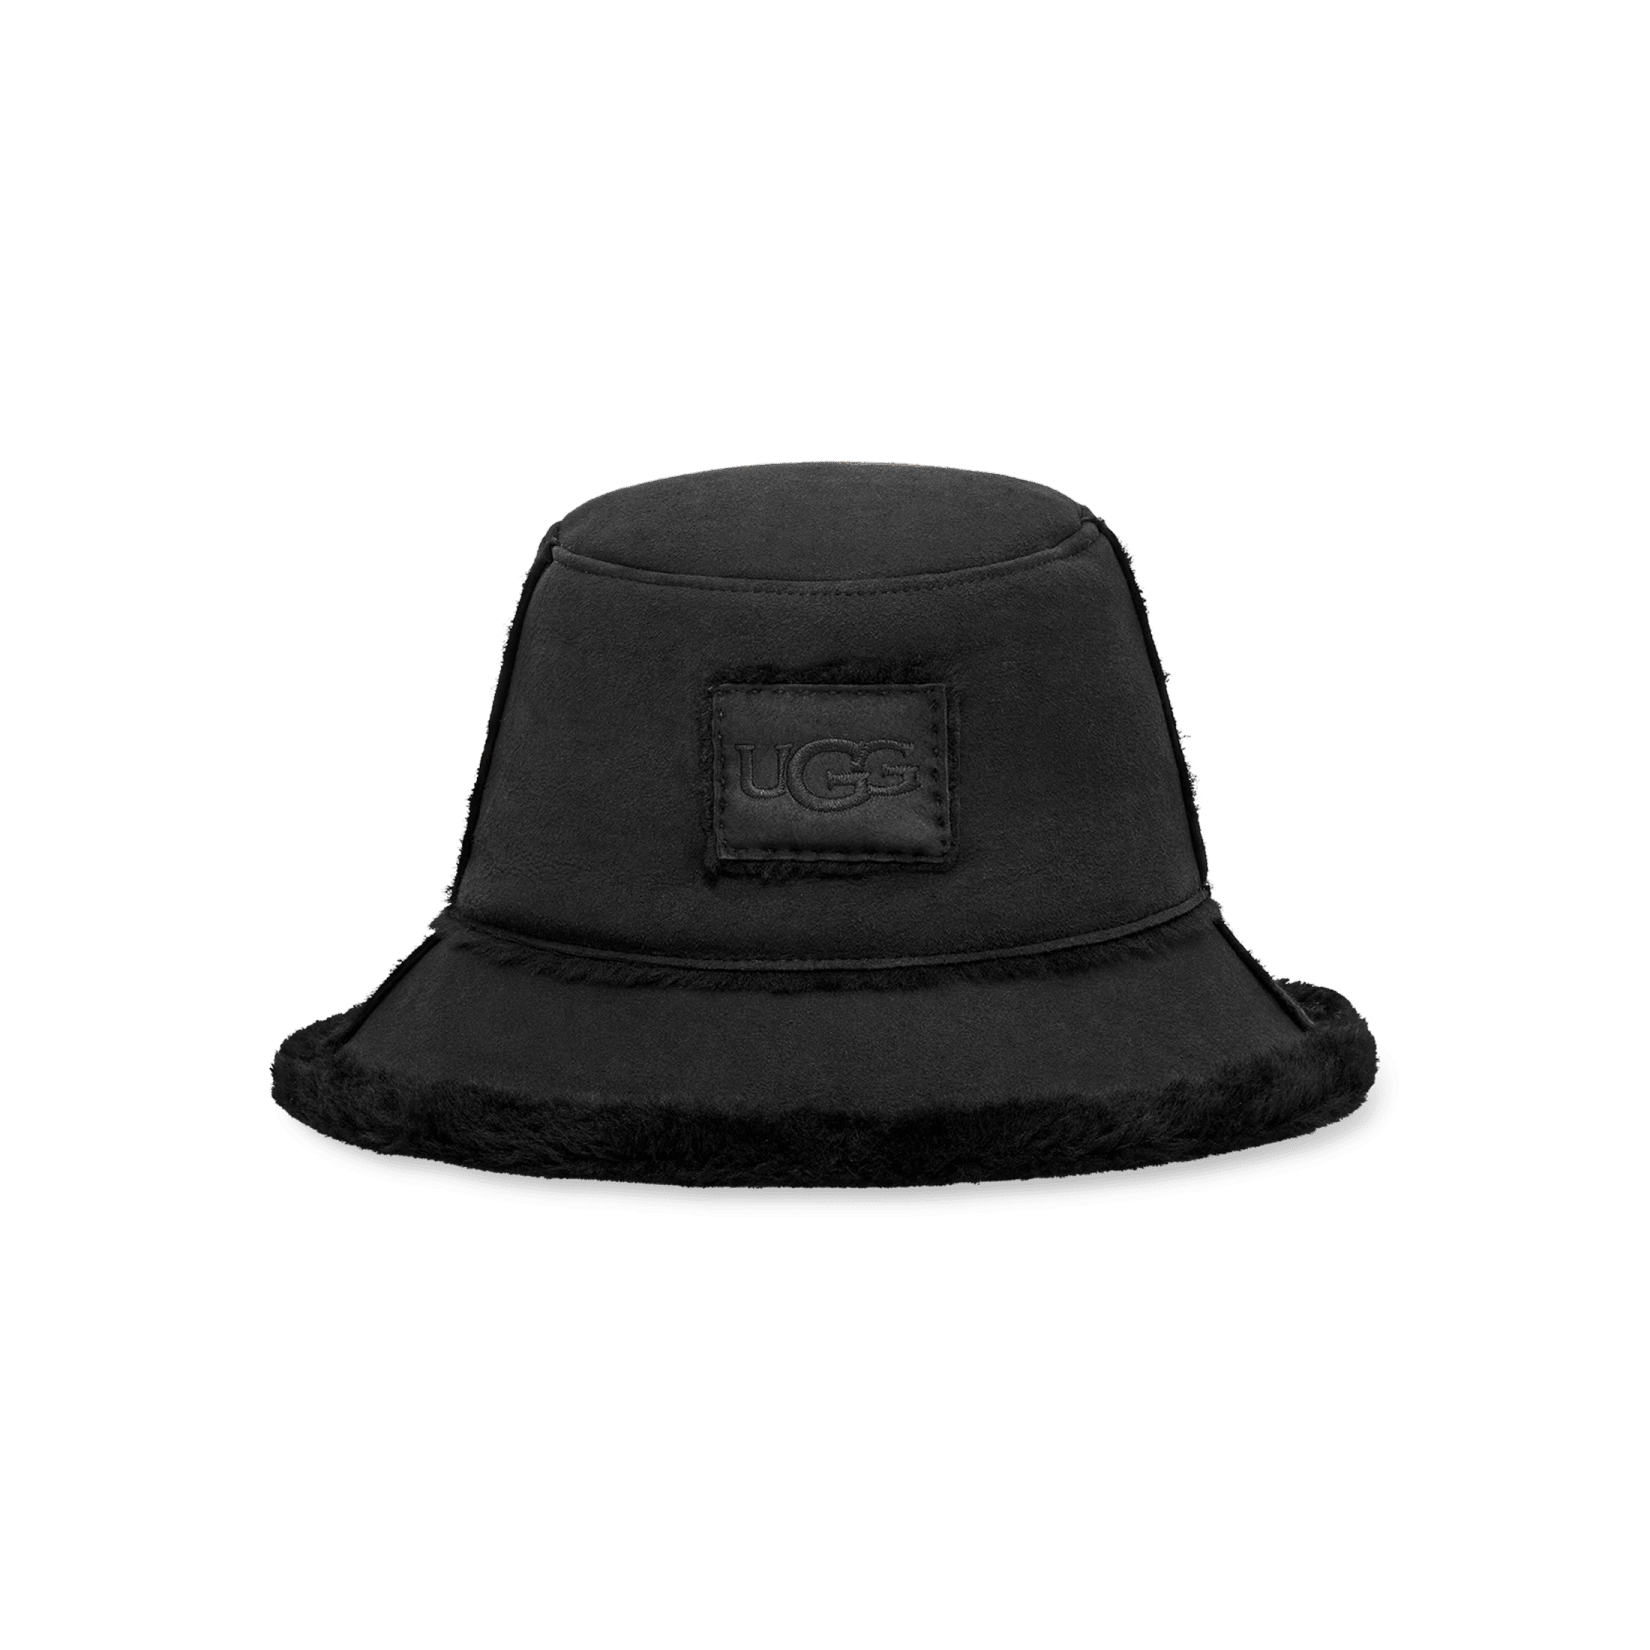 アグ シープスキンハット - 帽子